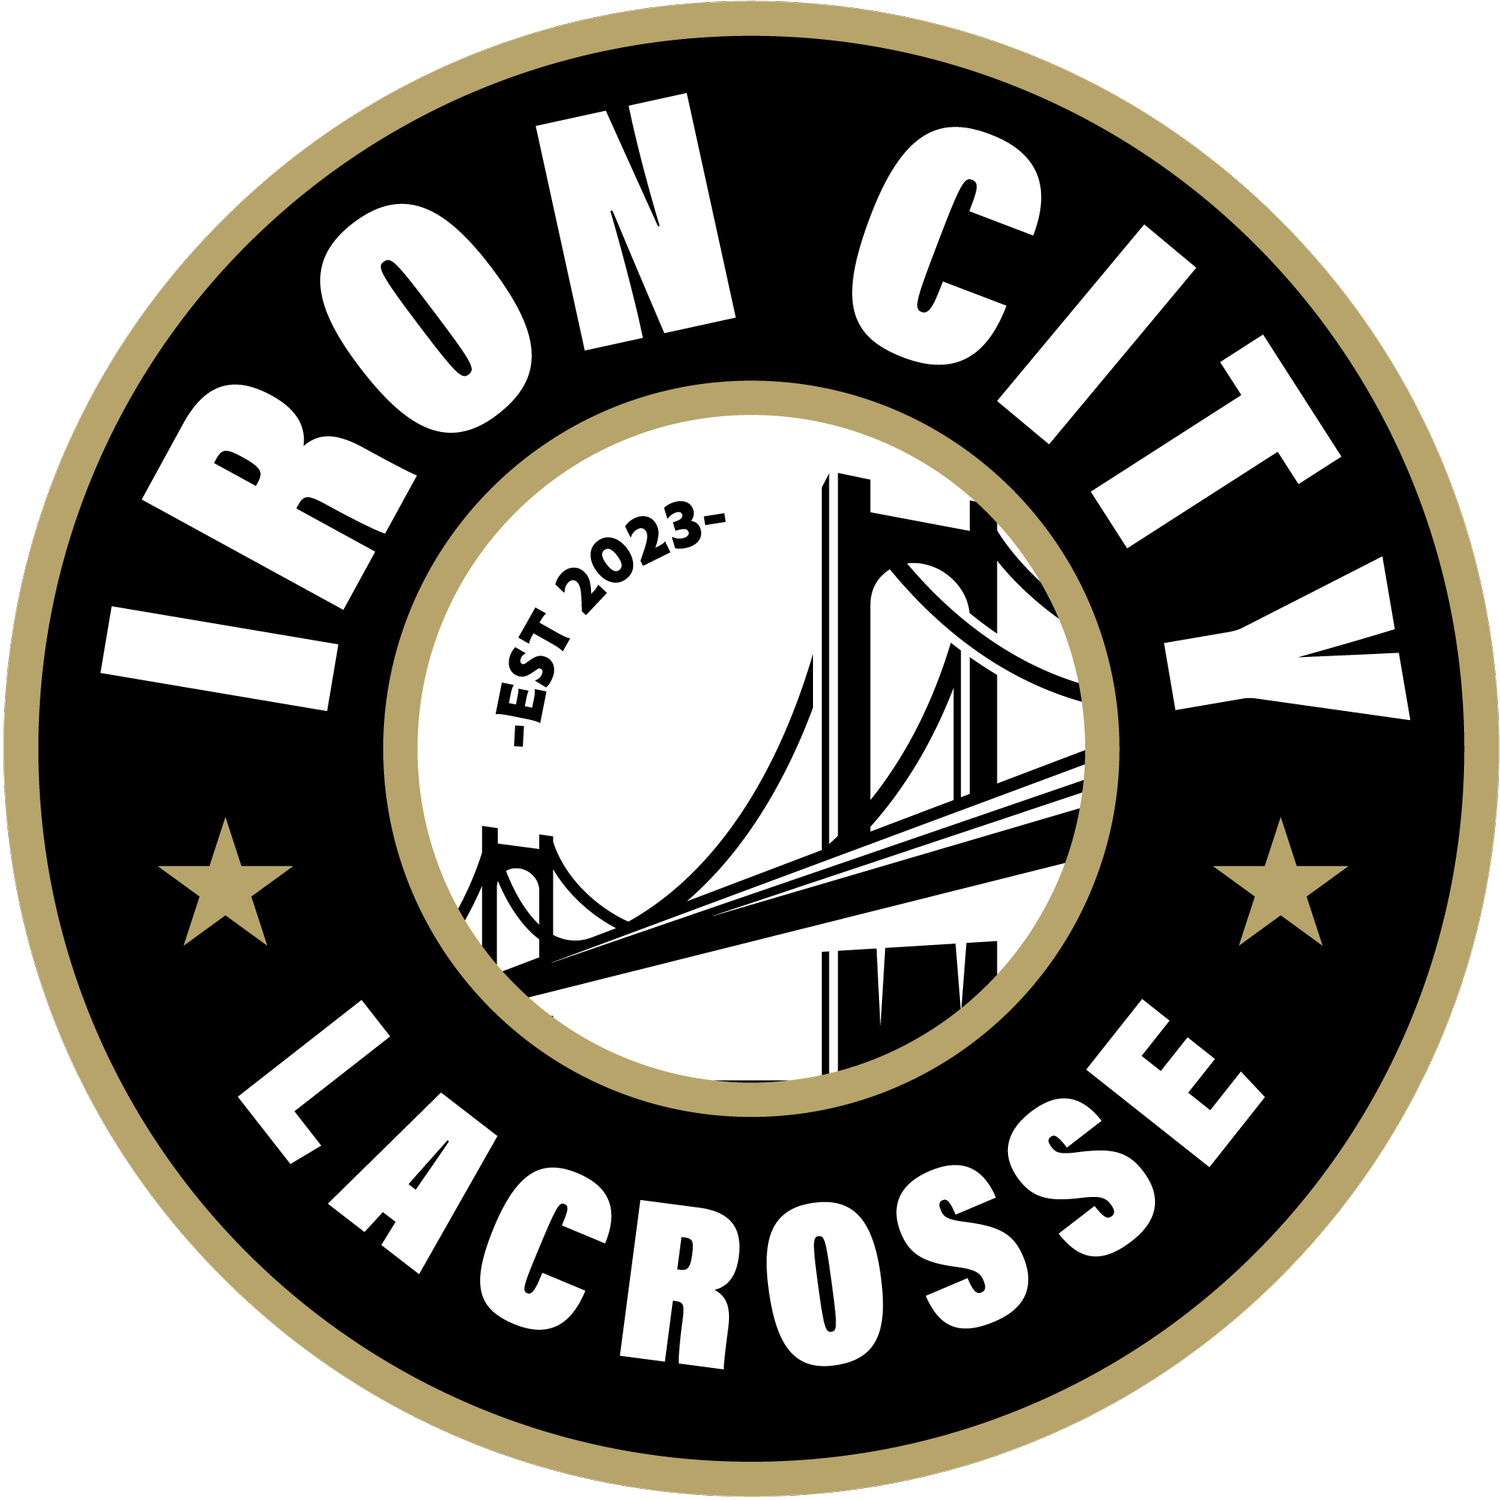 Iron City Lacrosse Club